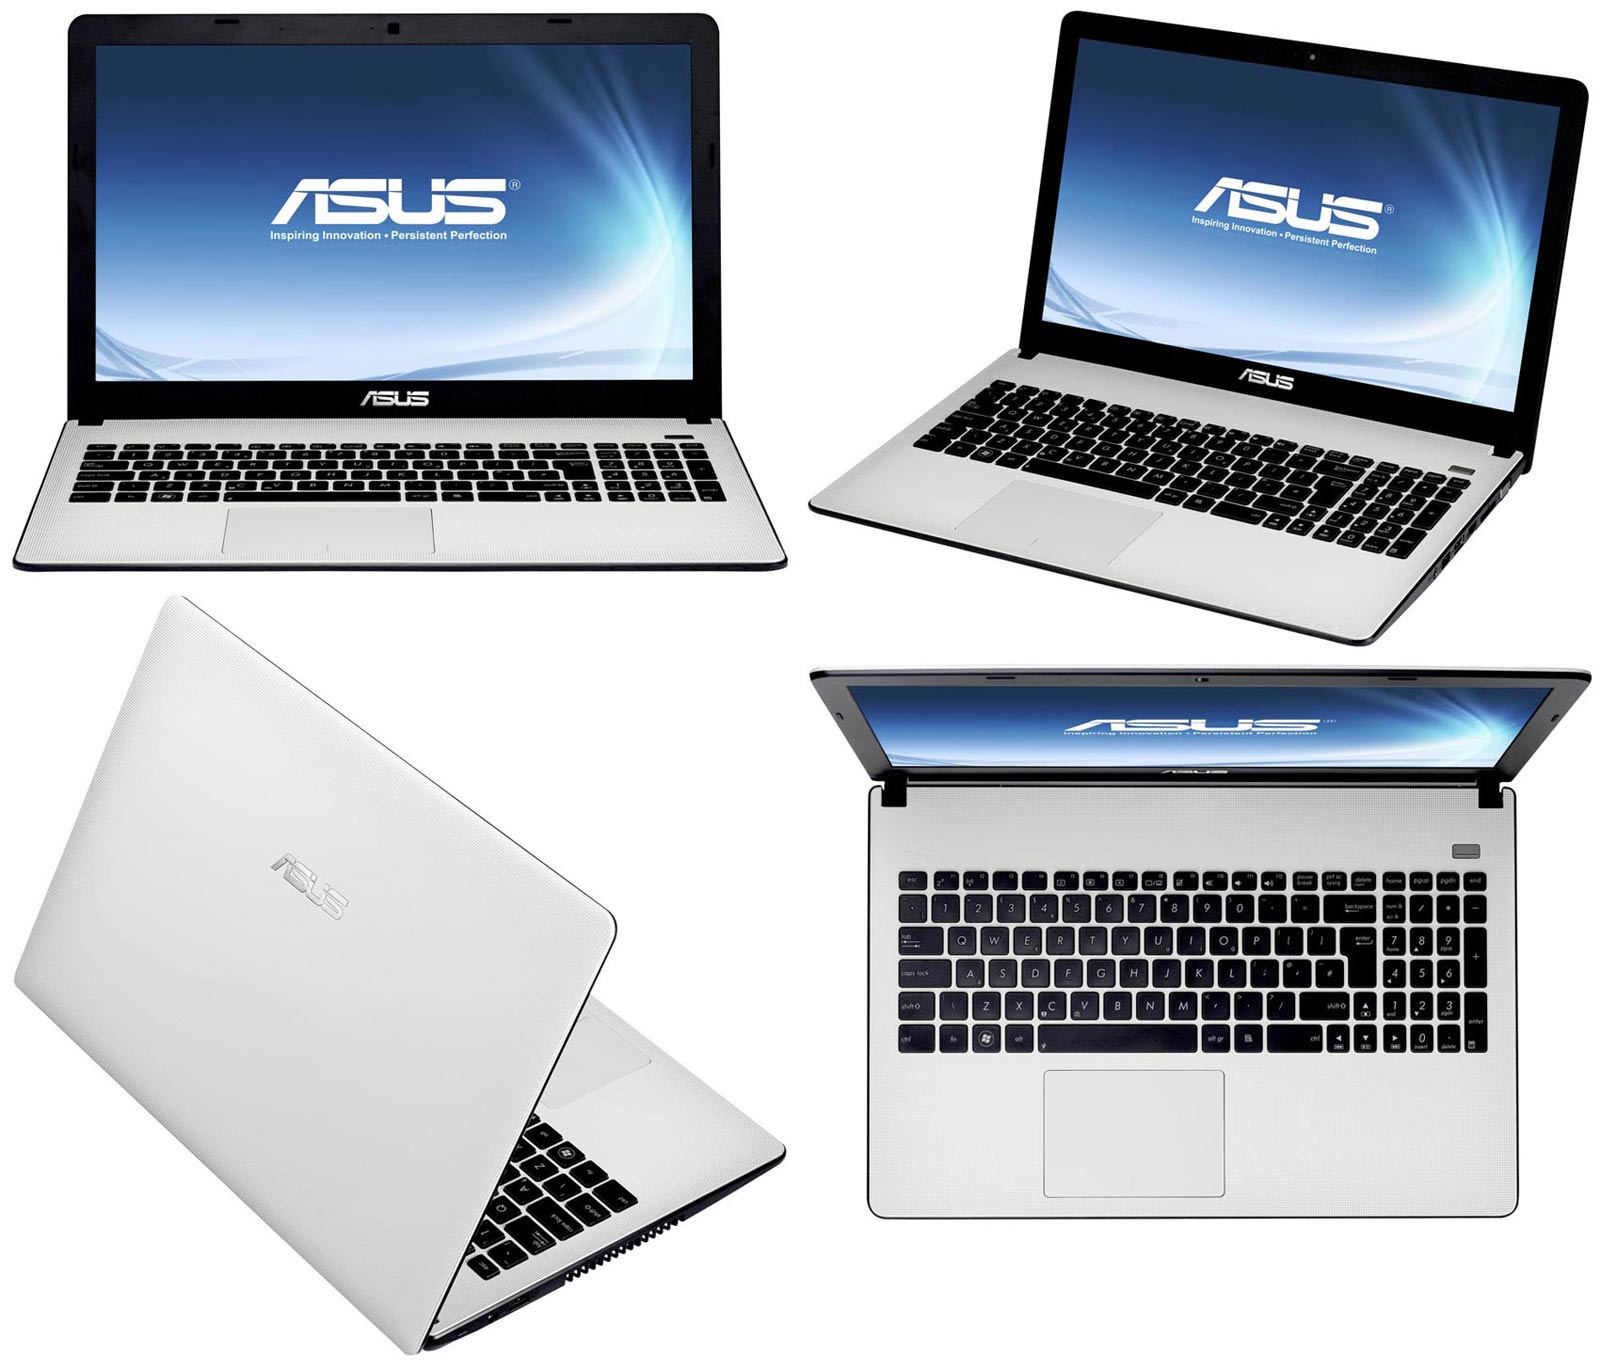 bán laptop cũ Asus X501A giá rẻ tại Hà Nội